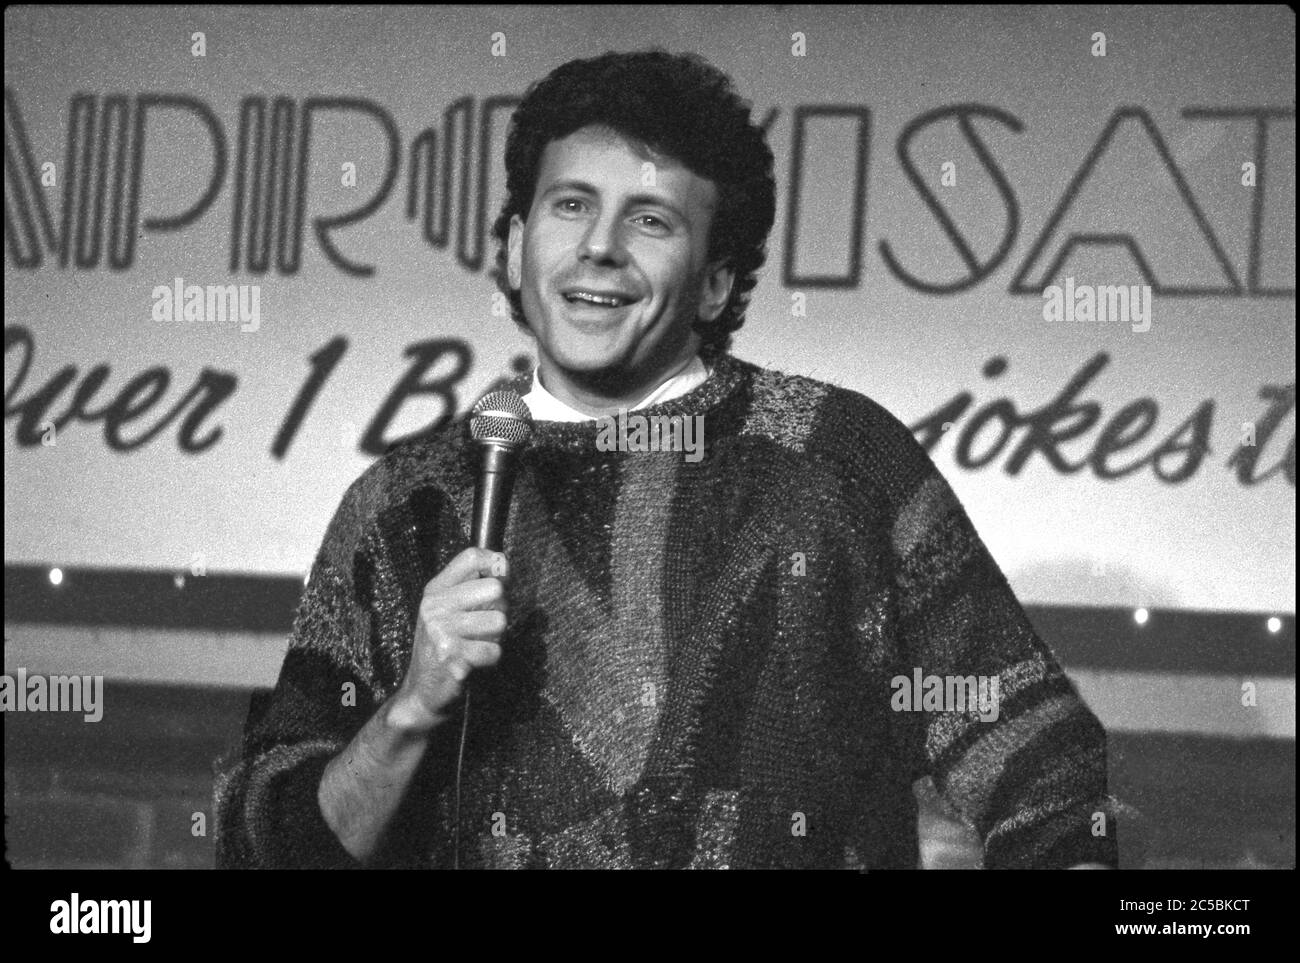 Le comédien Paul Reiser qui joue de la comédie au théâtre Improv à Werst Hollywood, CA vers les années 1980 Banque D'Images